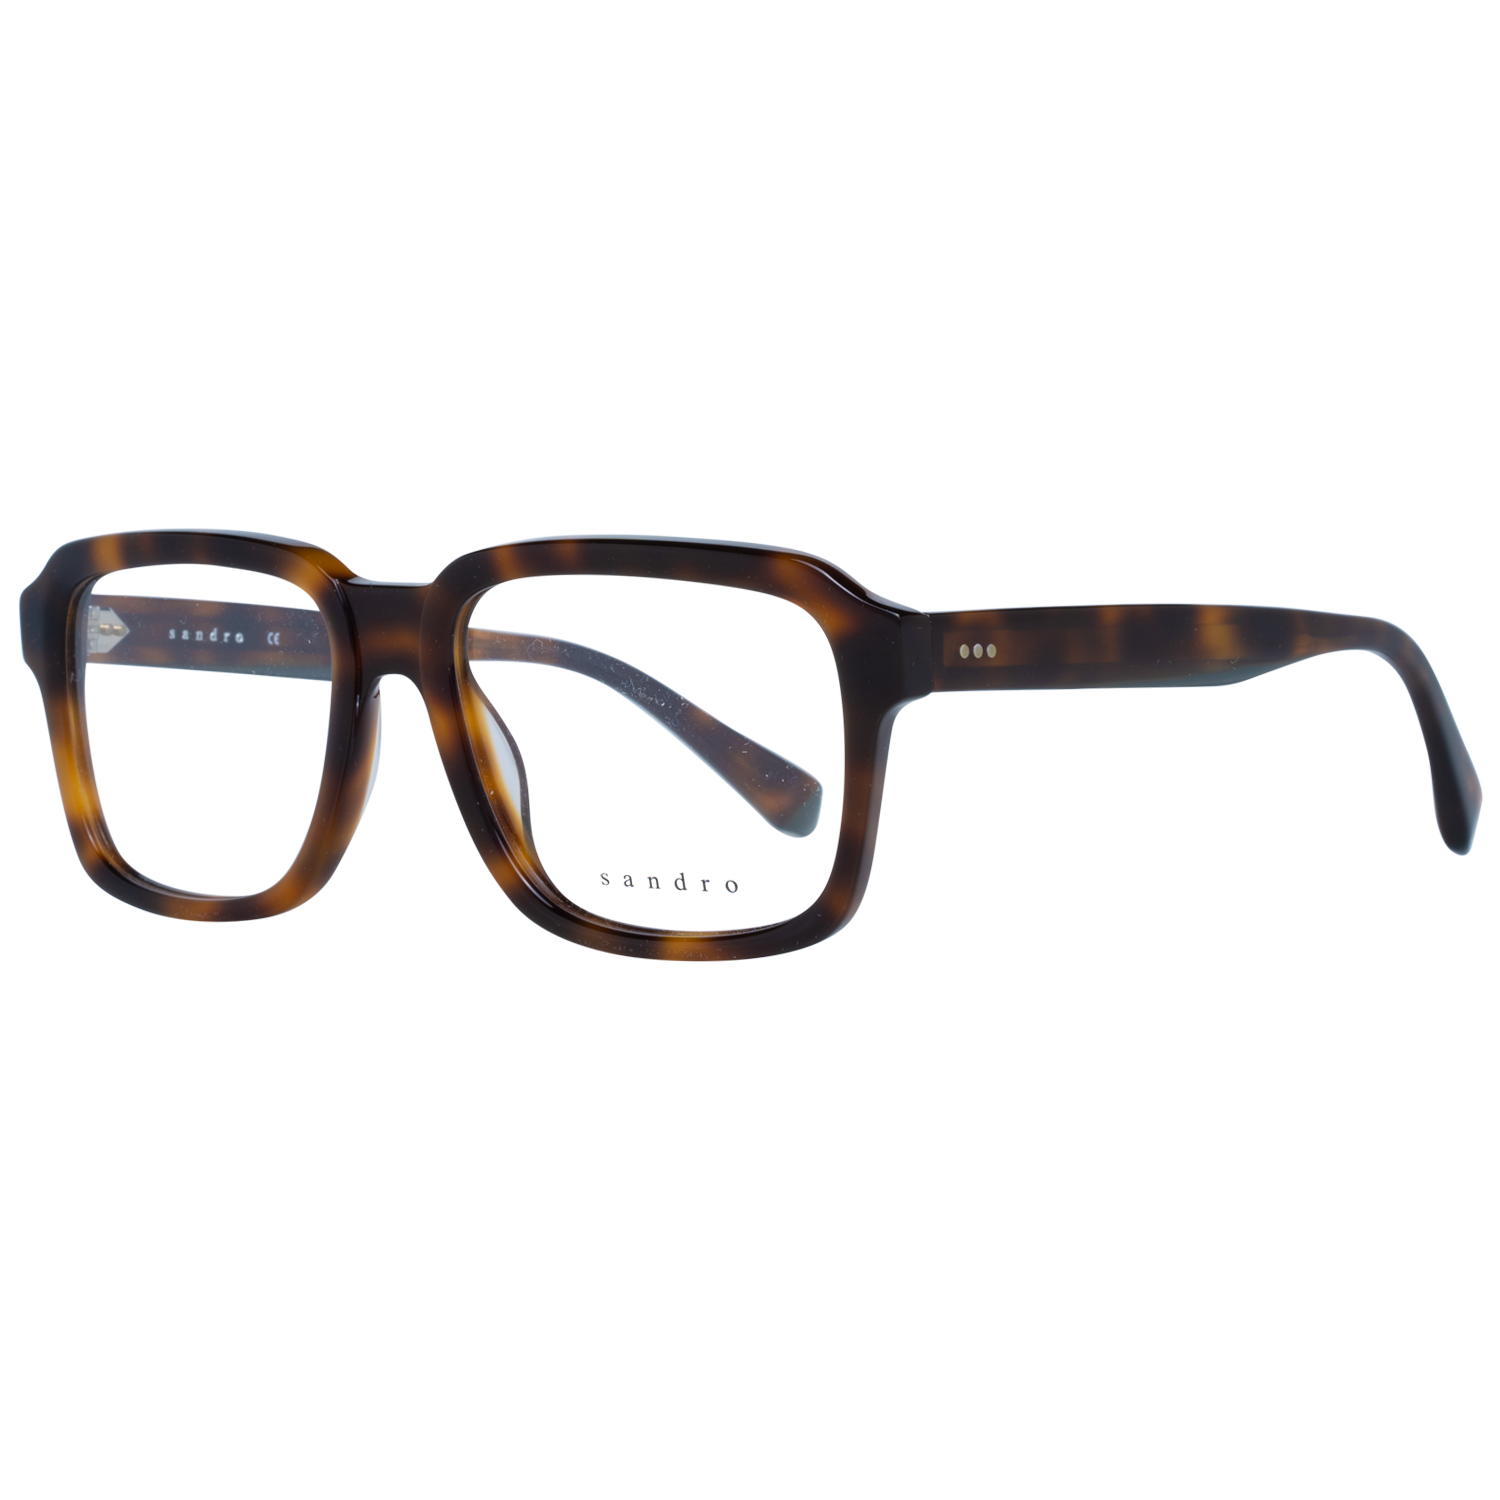 Sandro Frames Sandro Glasses Men Brown Havana Square Frames SD1000 201 53 Eyeglasses Eyewear UK USA Australia 